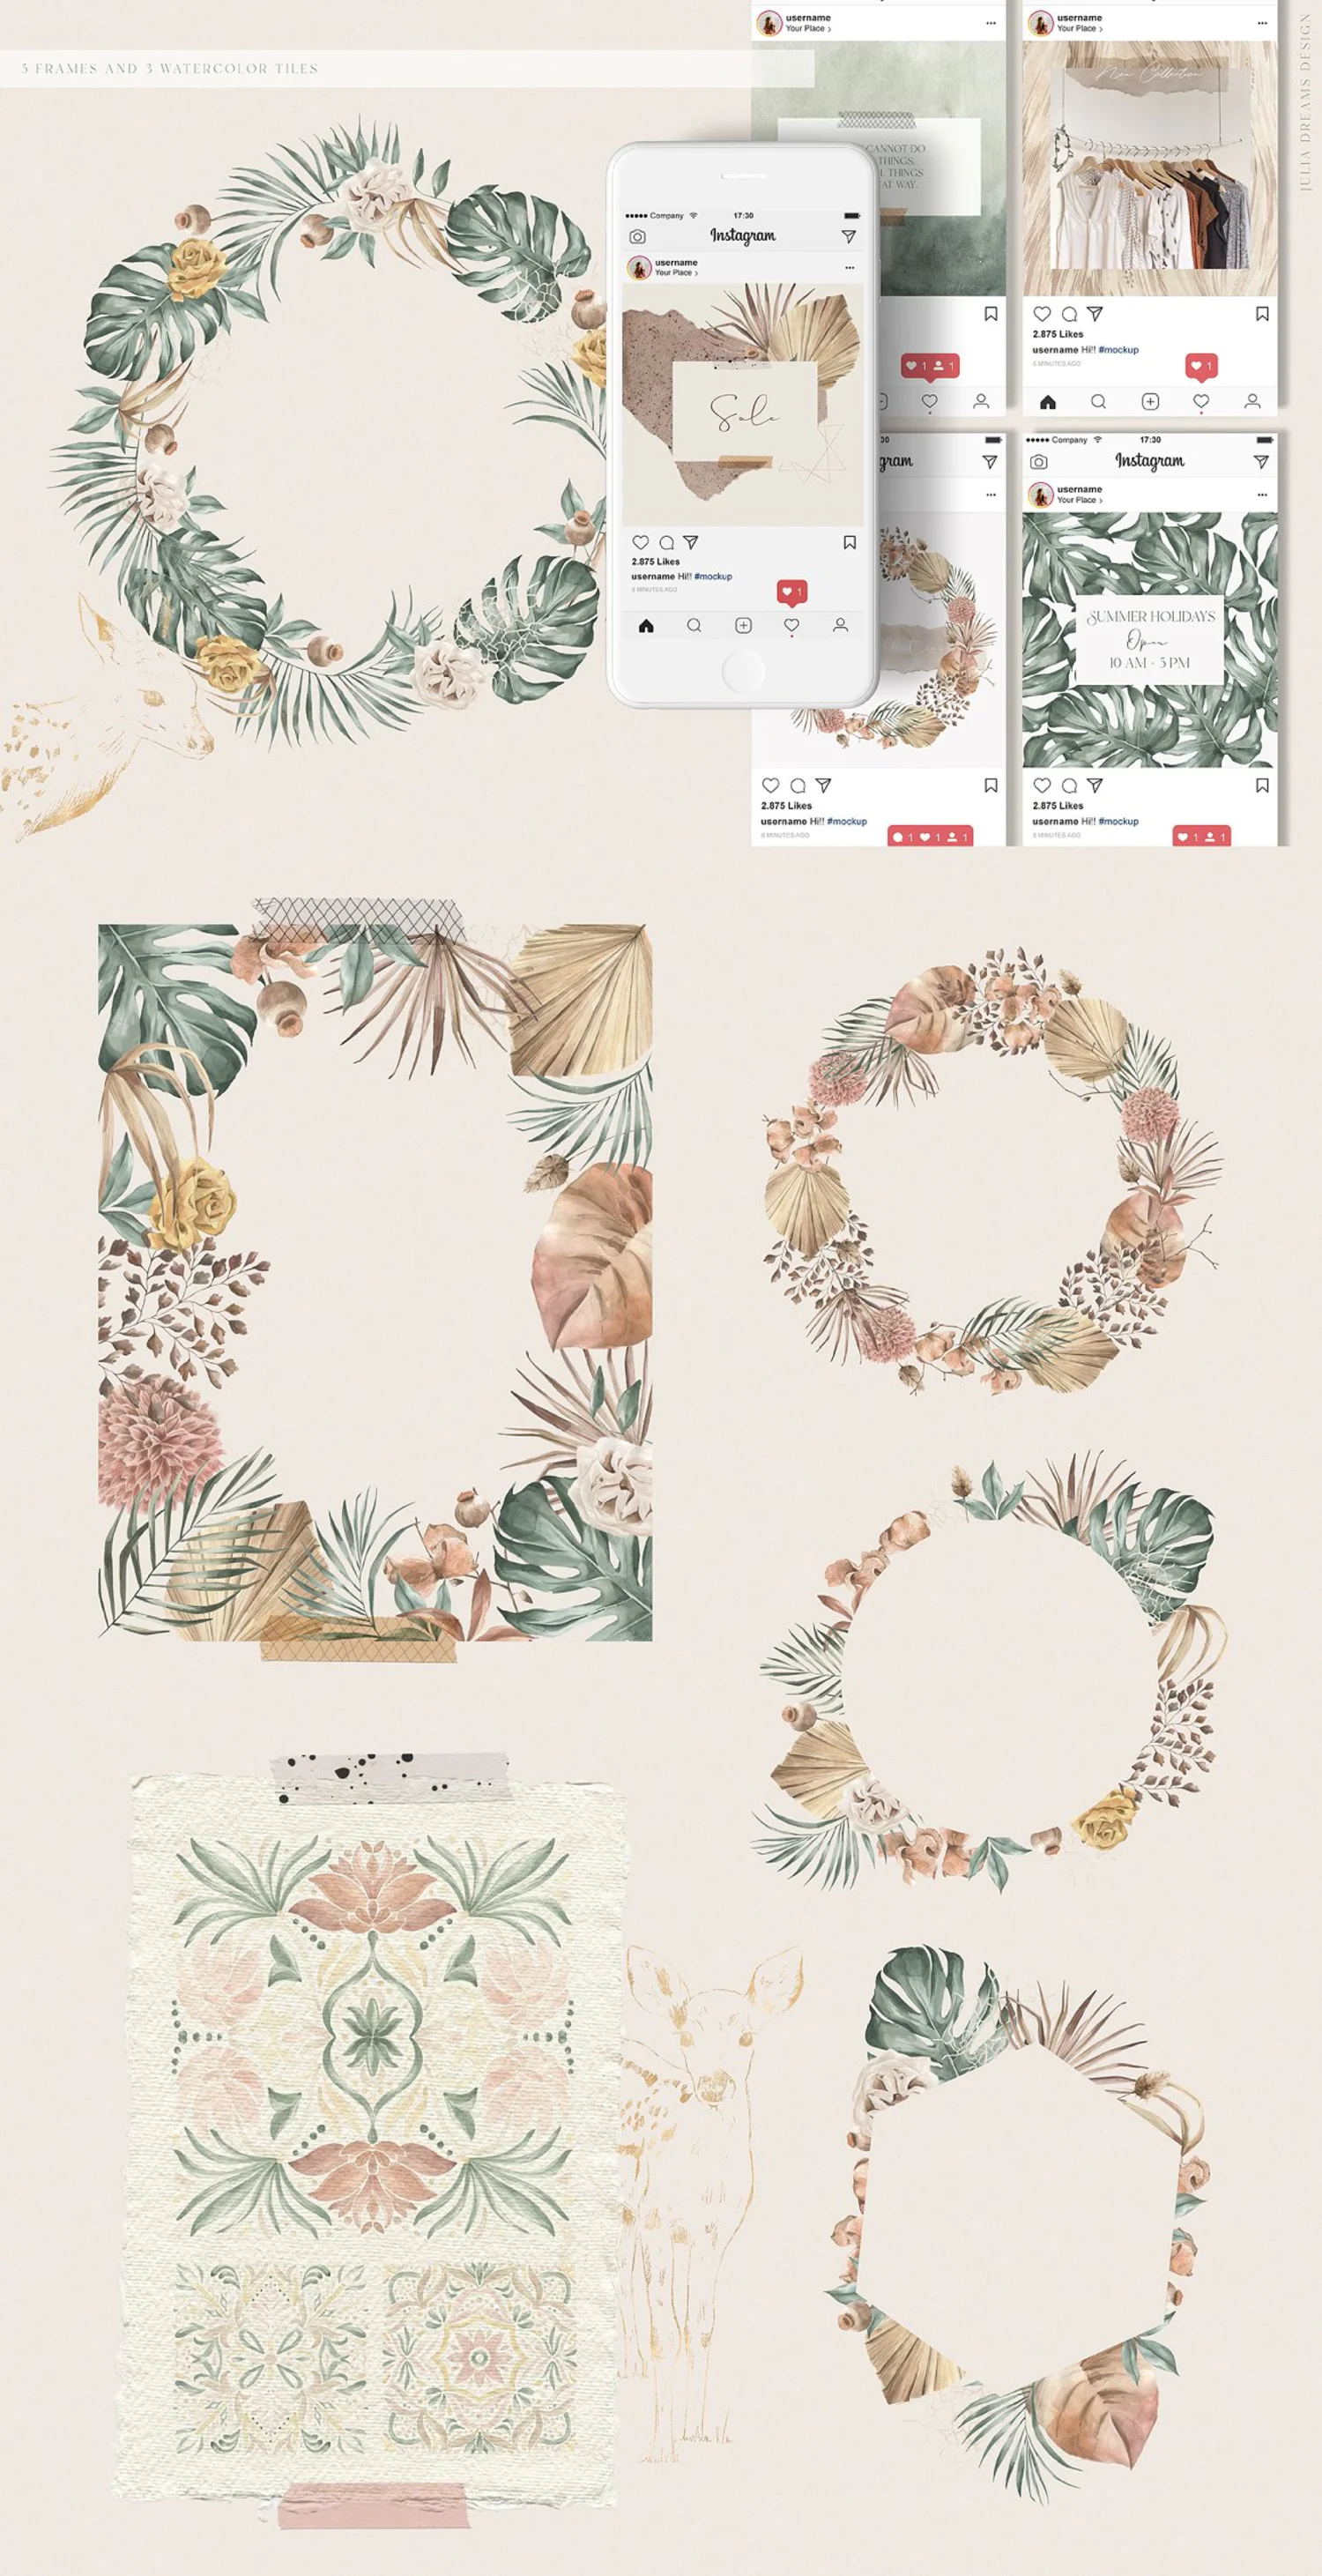 5439 热带植物棕榈叶和鹿的水彩插画素材